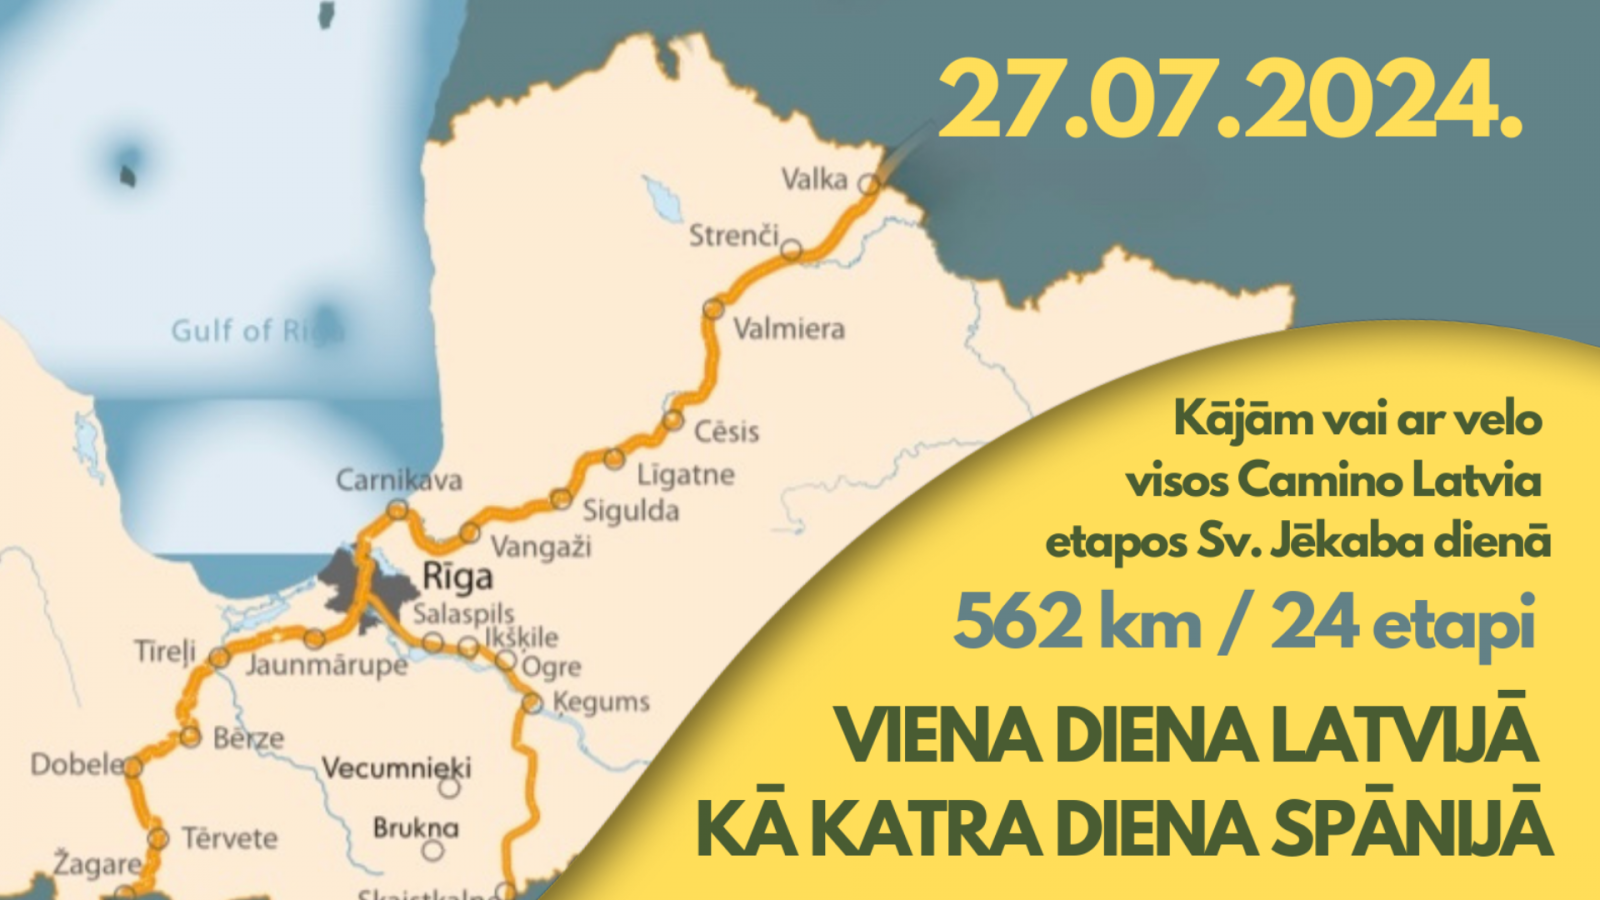 "Camino Latvija" aicina pievienoties vienas dienas pārgājienā etapā Ogre-Ķegums